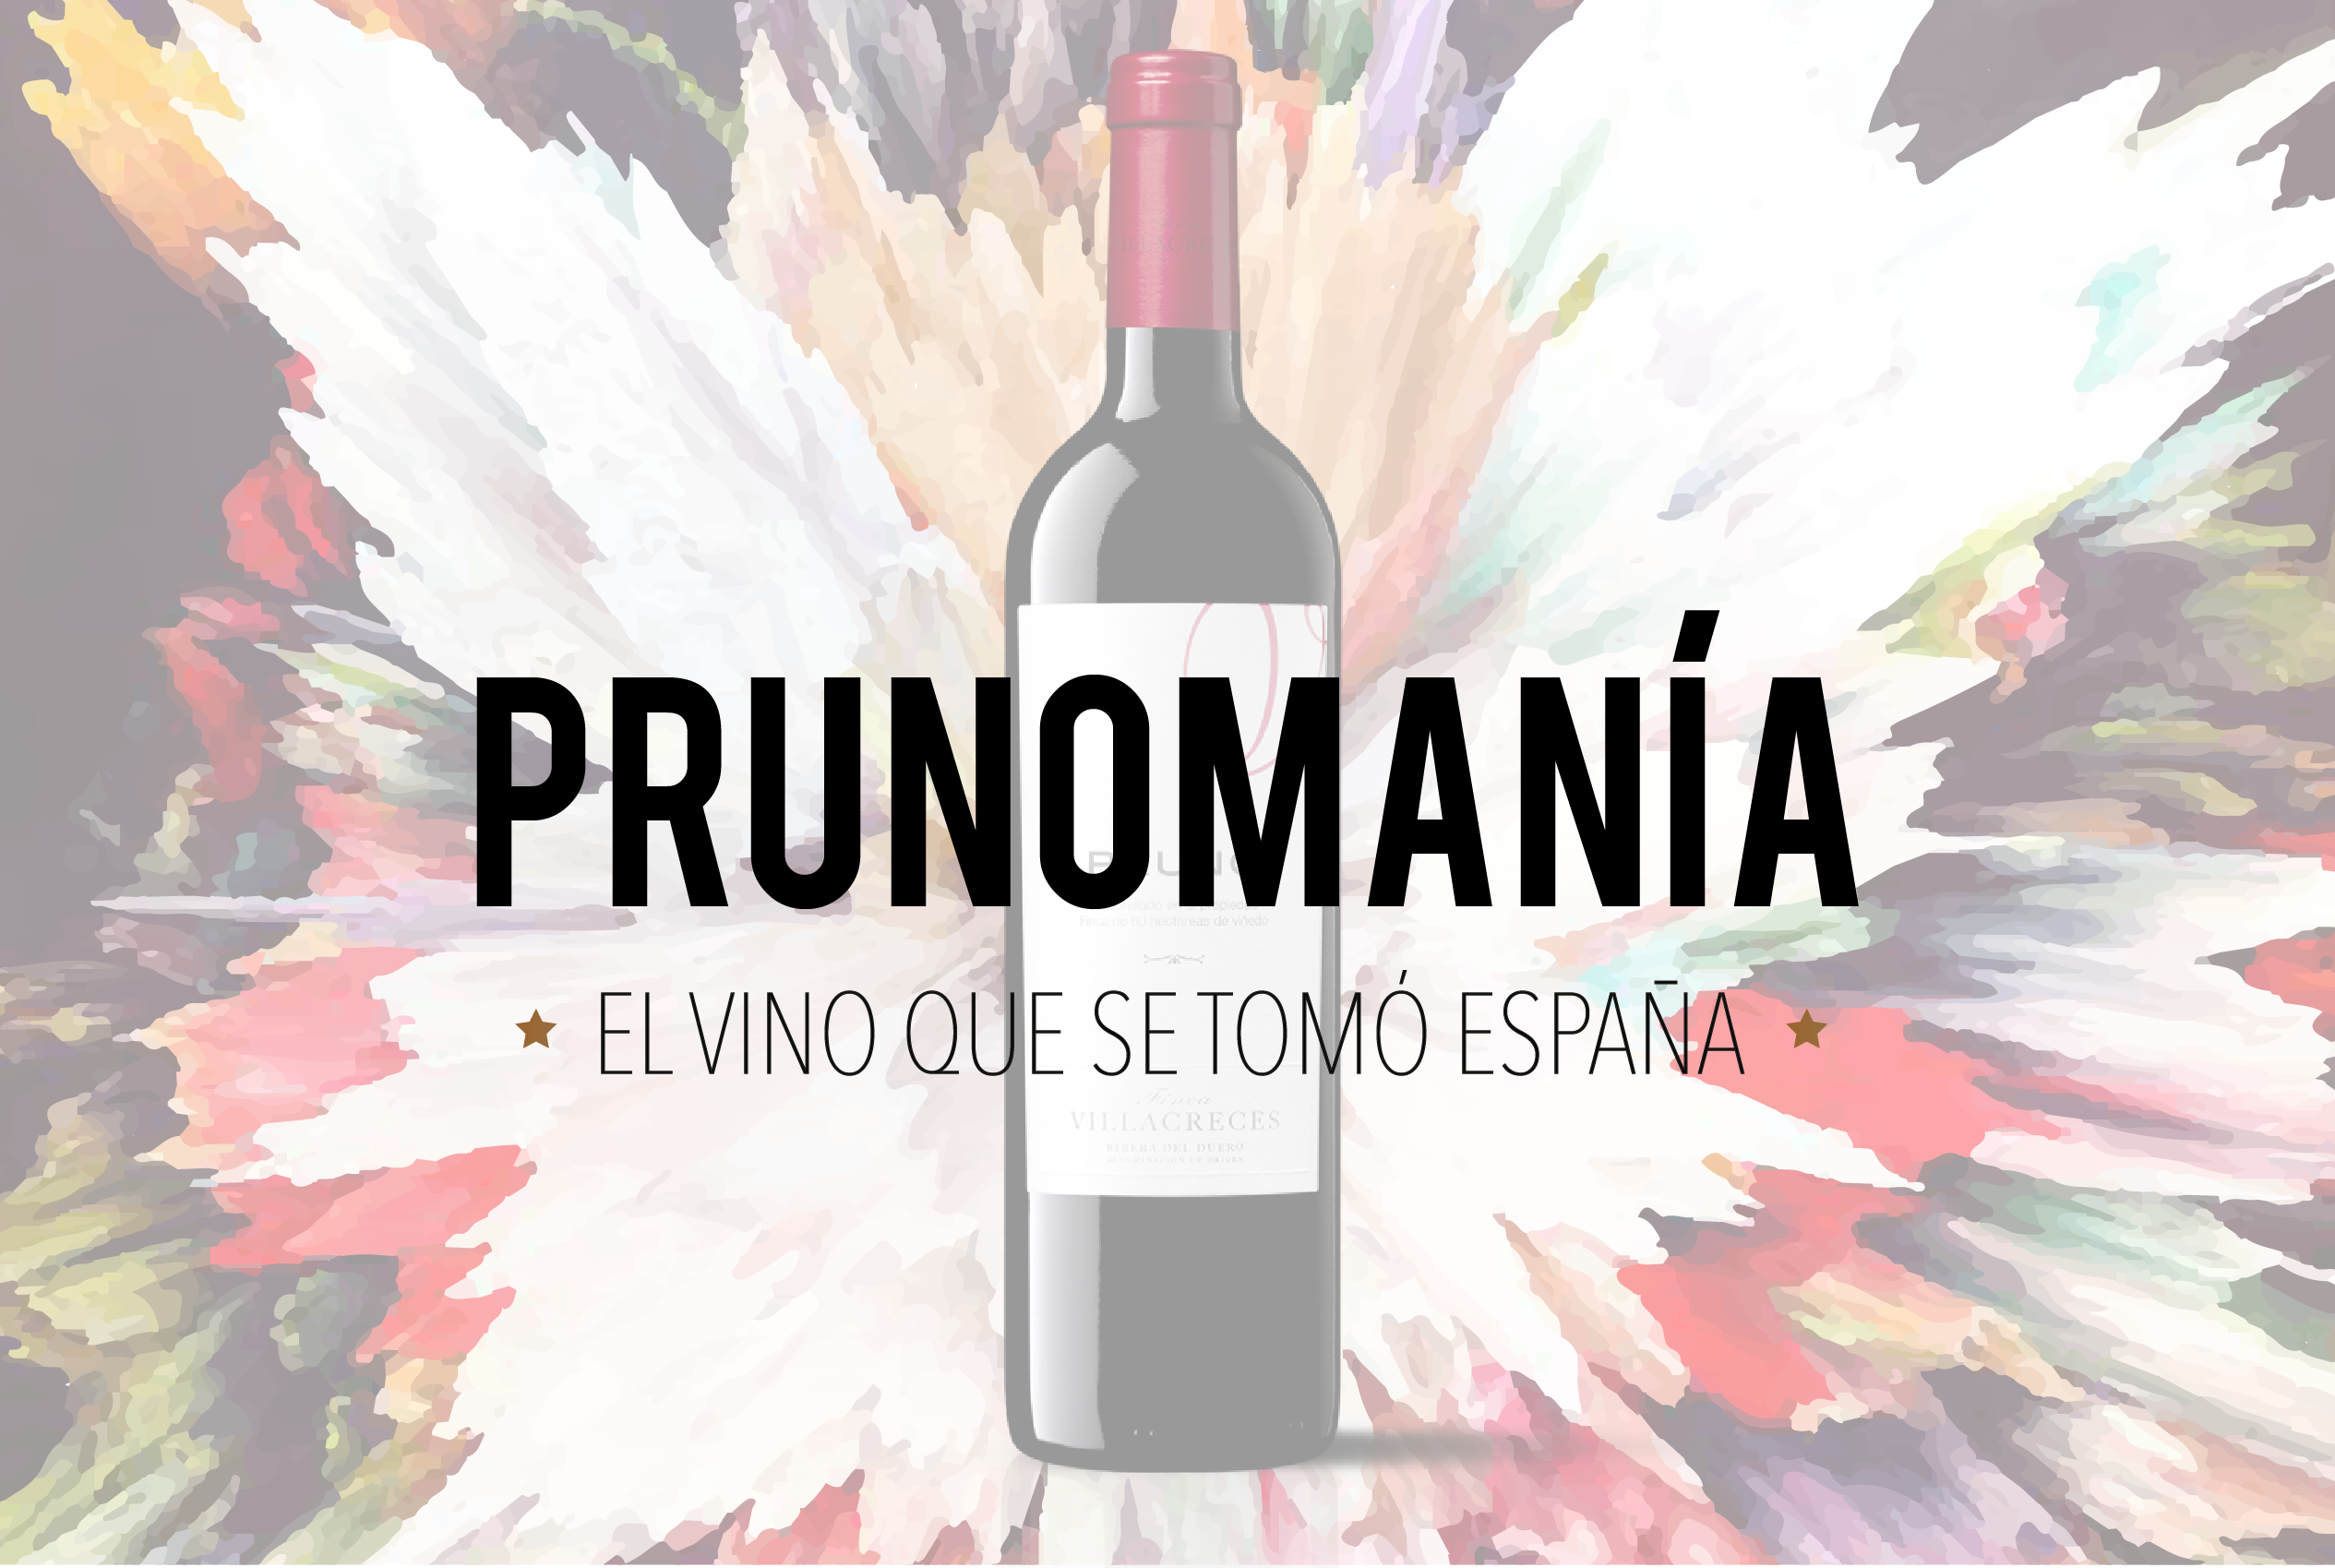 Prunomanía: el vino que se tomó España.